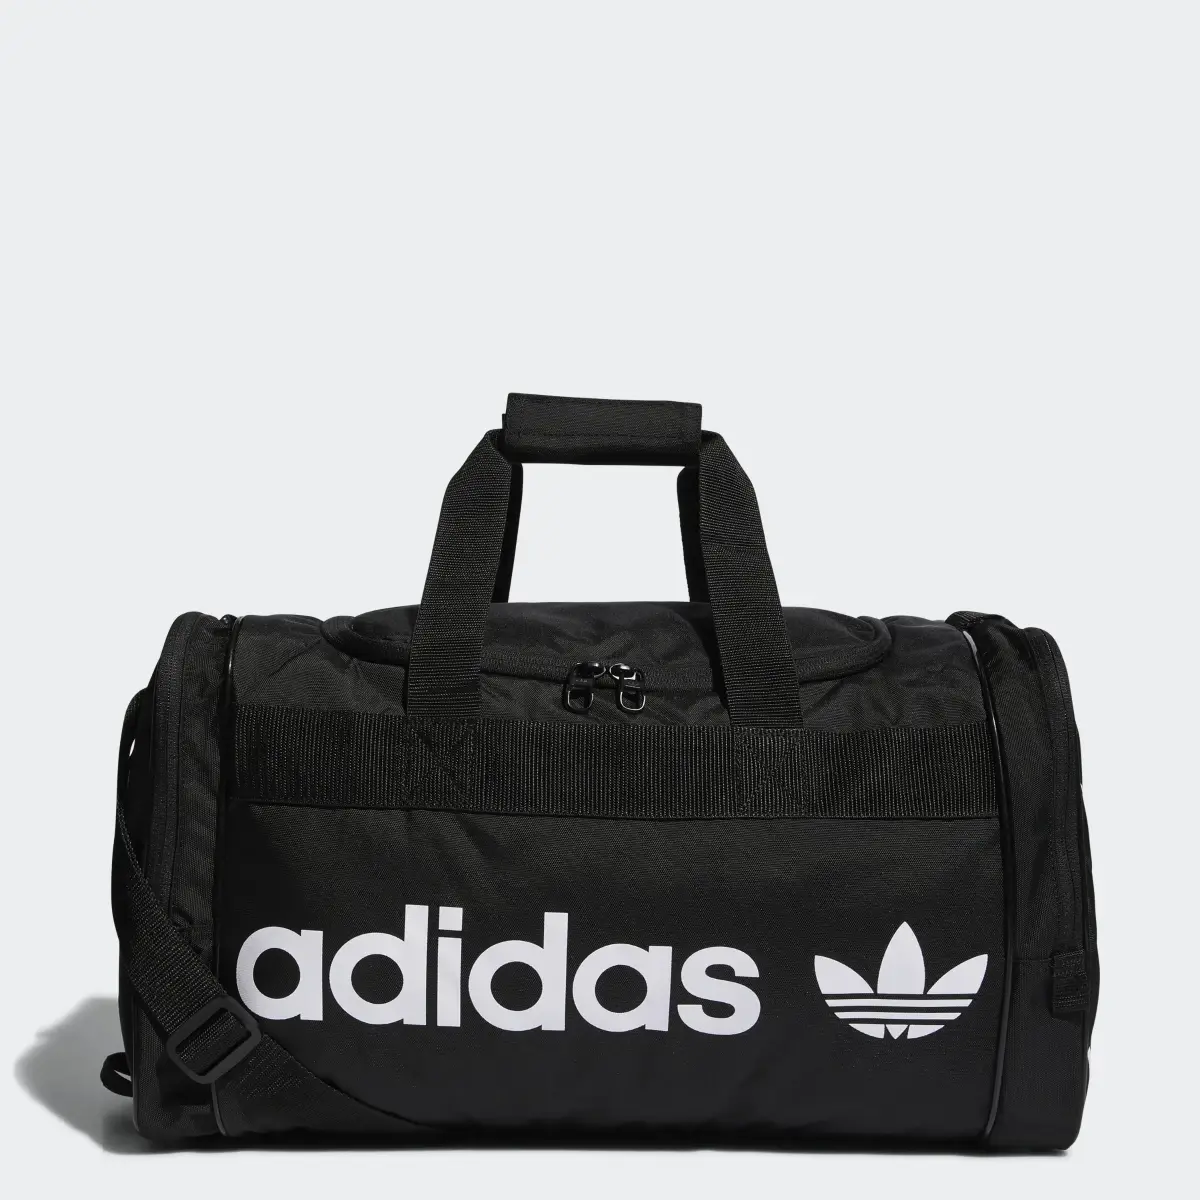 Adidas Santiago Duffel Bag. 1